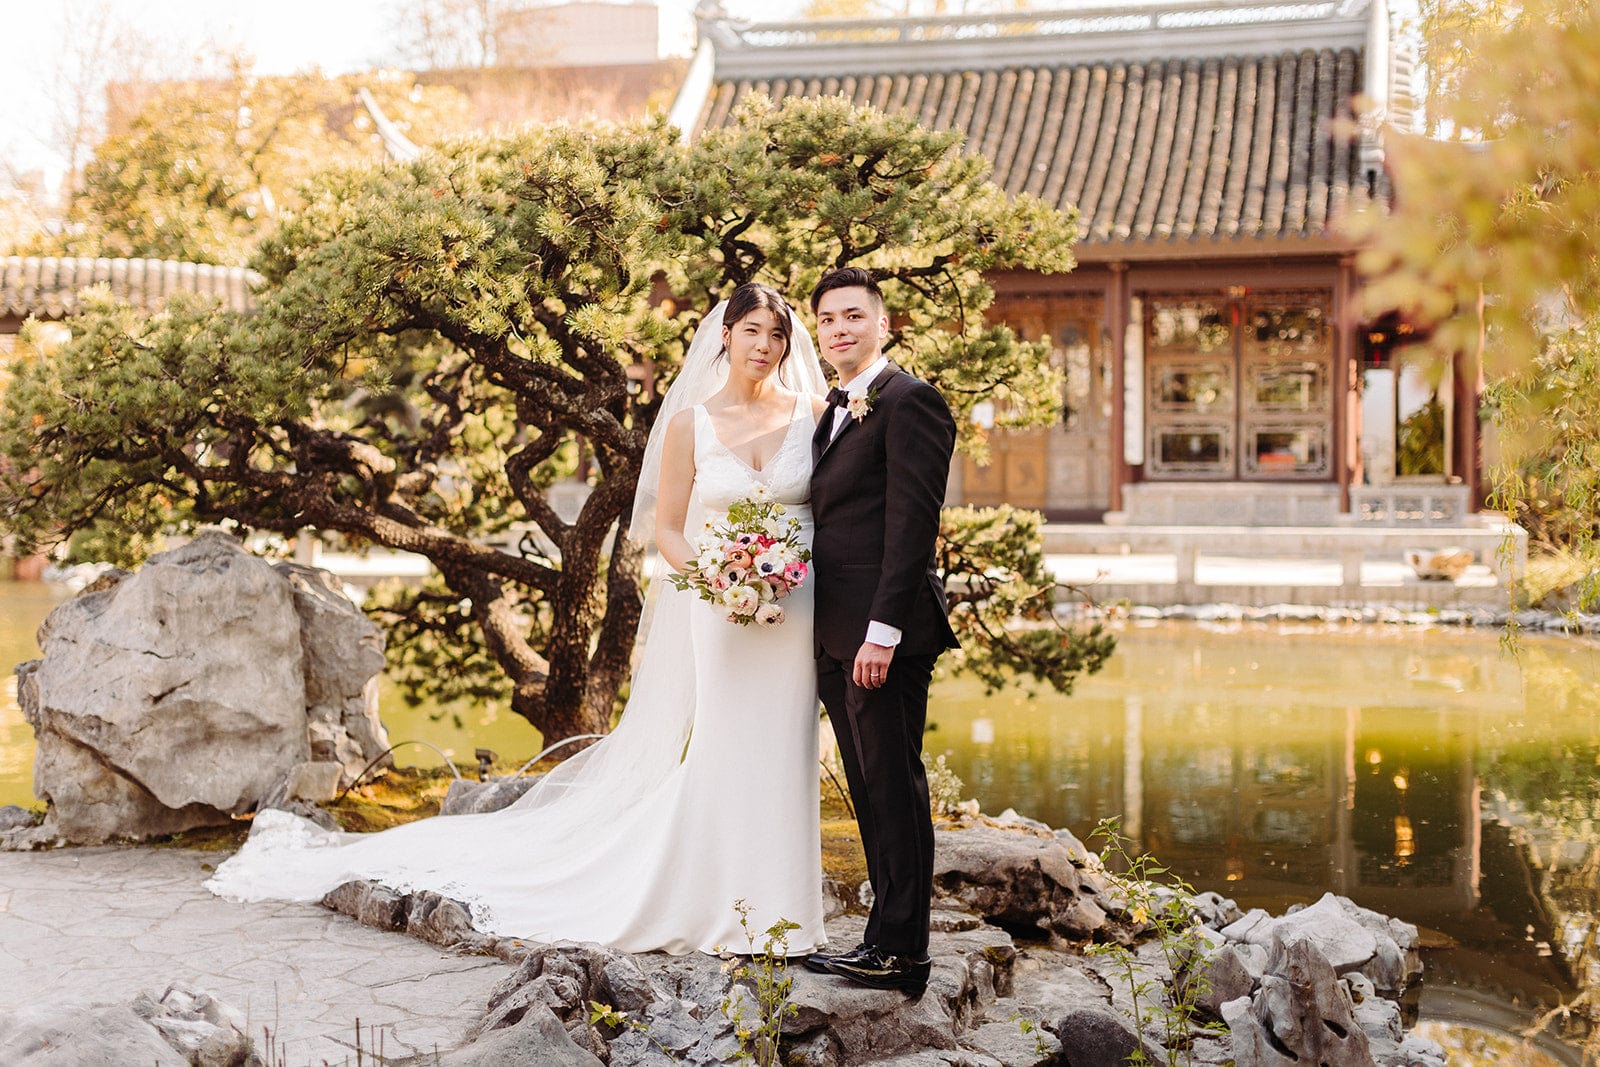 White Chinese Wedding Dress